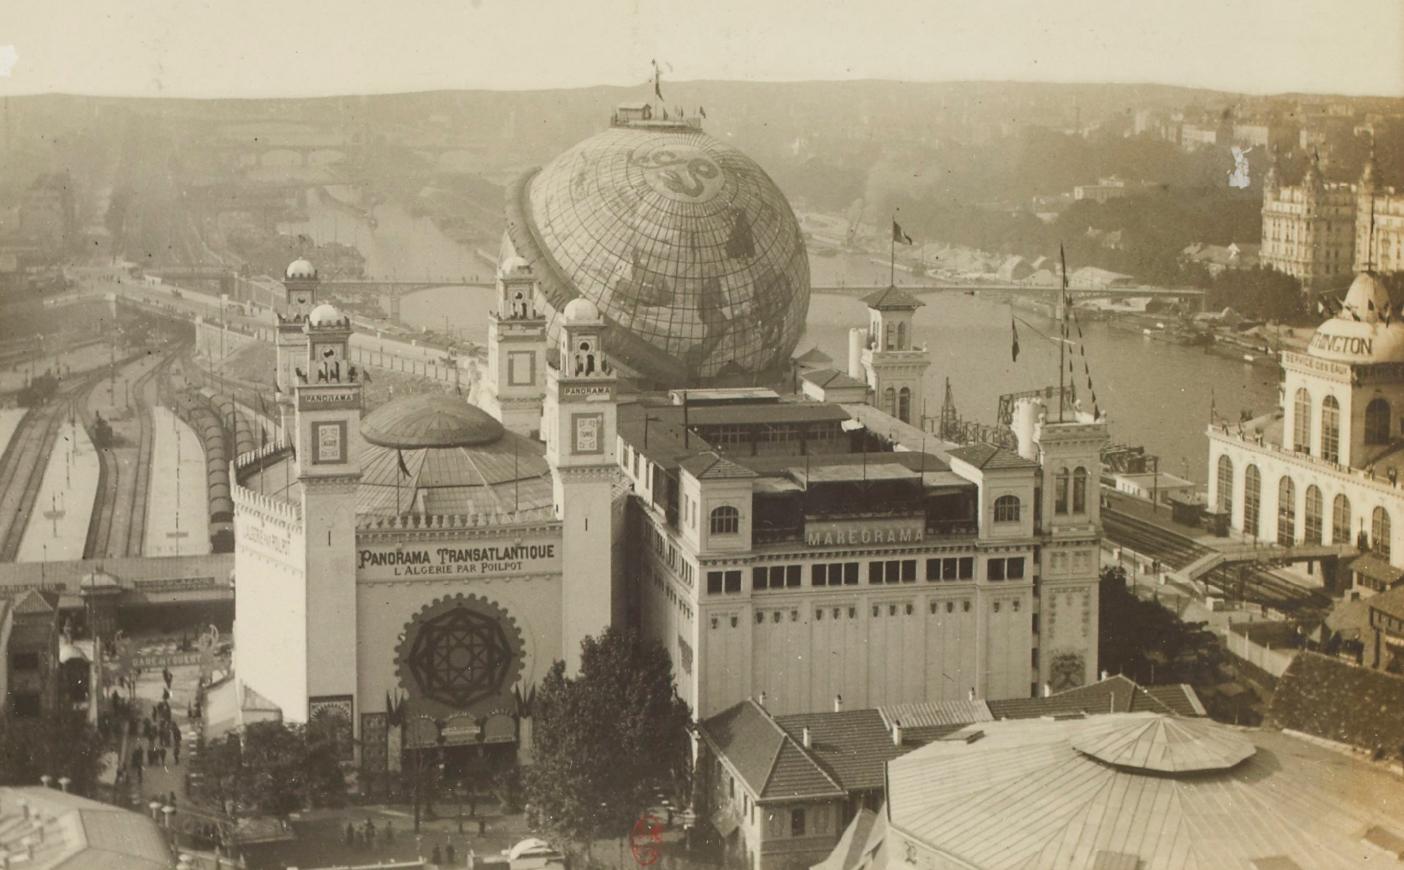 Exposition universelle internationale de 1900 - MAH.1939.7 